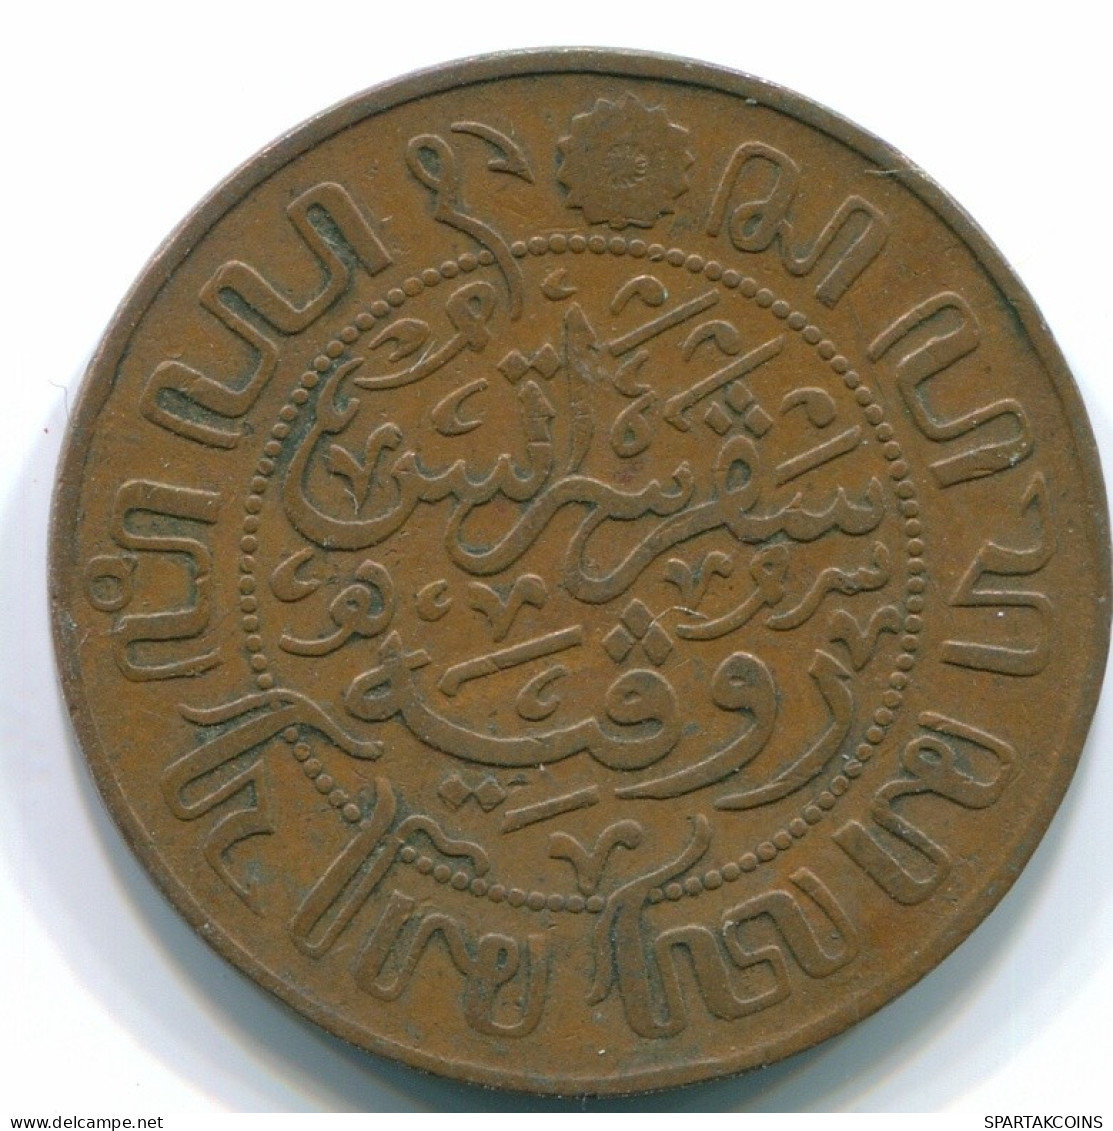 1 CENT 1929 INDES ORIENTALES NÉERLANDAISES INDONÉSIE Copper Colonial Pièce #S10109.F.A - Dutch East Indies